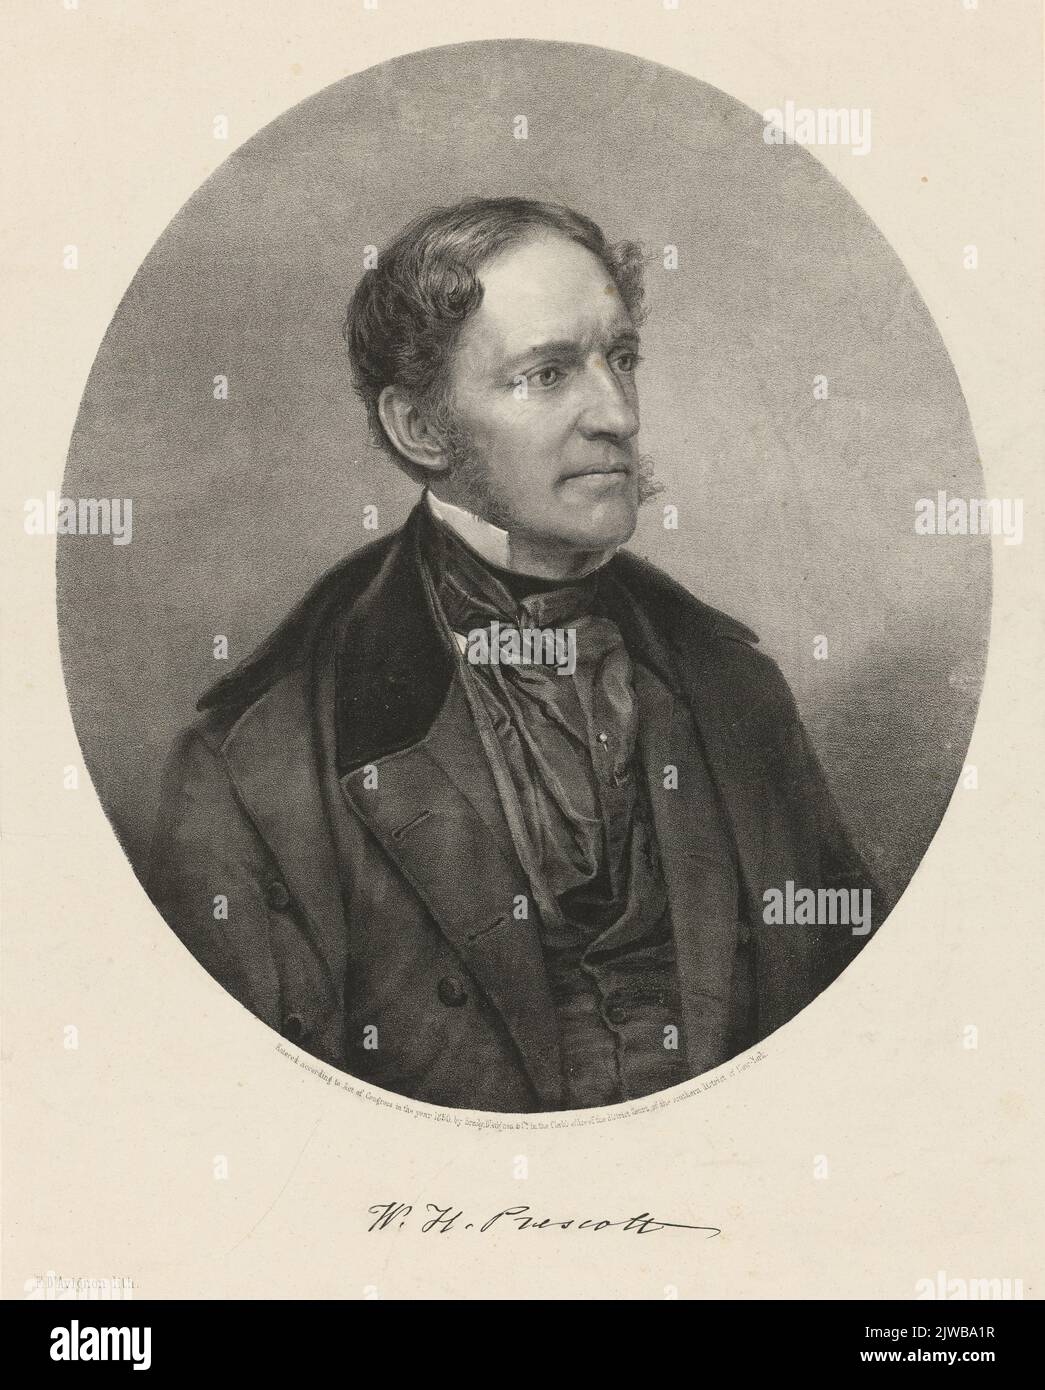 Portrait de l'historien américain William Hickling Prescott (1796-1859) le plus connu pour ses œuvres majeures Histoire de la conquête du Mexique (1843) et Histoire de la conquête du Pérou (1847) Banque D'Images